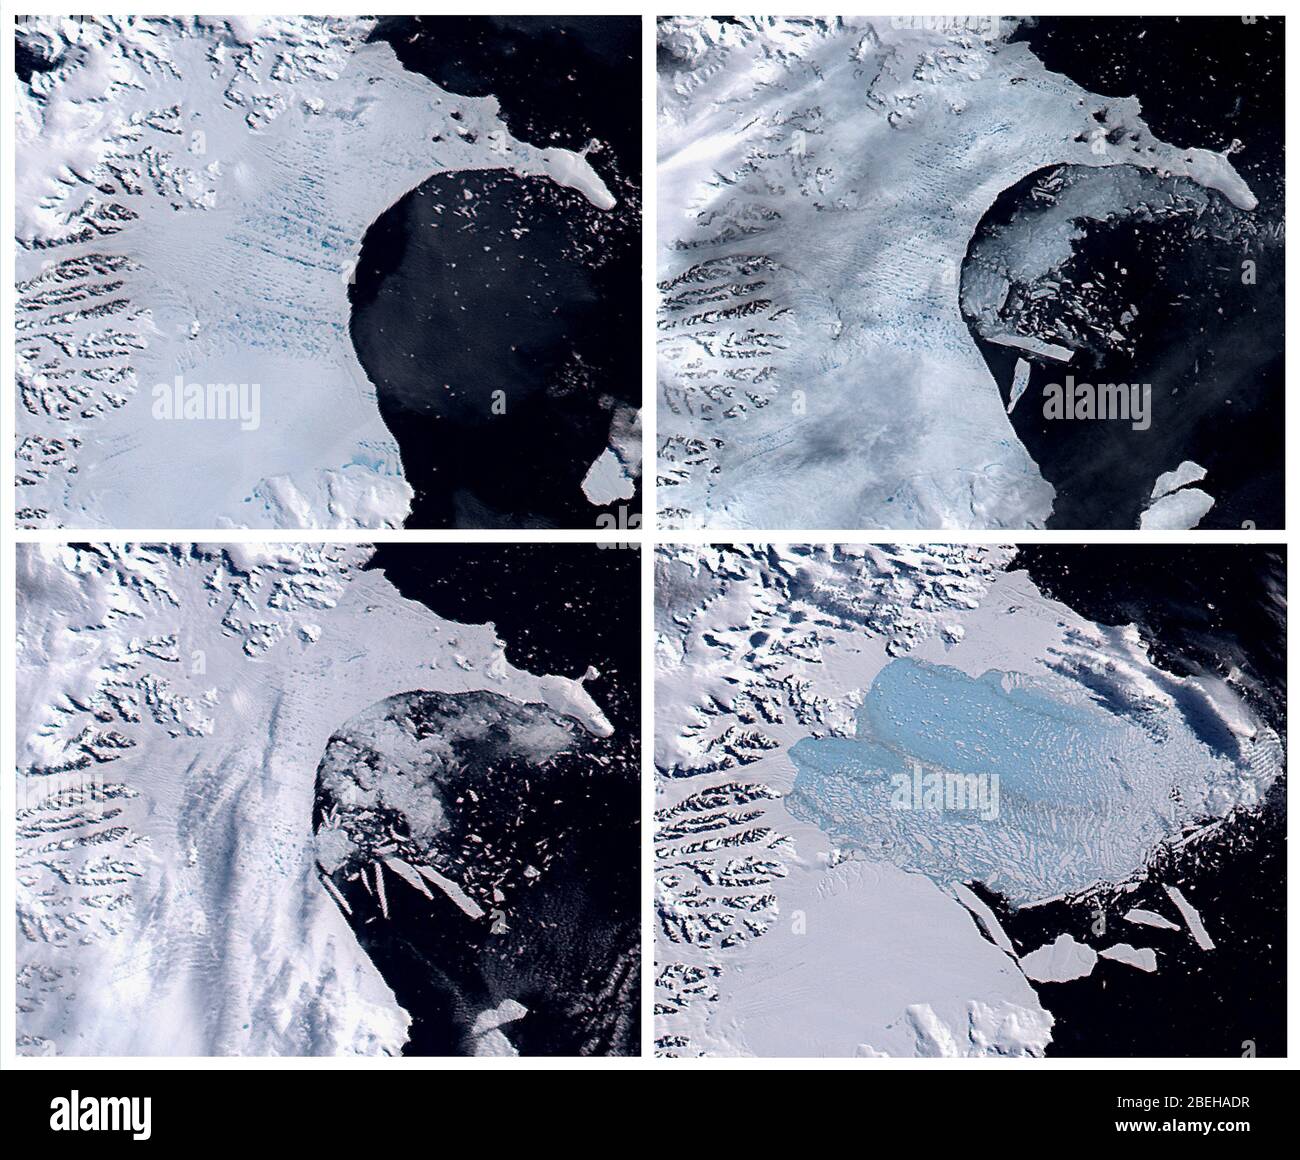 La prima delle cinque immagini a colori reali del crollo della piattaforma di ghiaccio Larsen B dell'Antartide nei mesi di gennaio, febbraio e marzo 2002, come registrato dal sensore satellitare MODIS della NASA. La prima immagine, dal gennaio 31, mostra lo scaffale in tarda estate australe con laghetti scuri blu melt puntando la sua superficie. Foto Stock